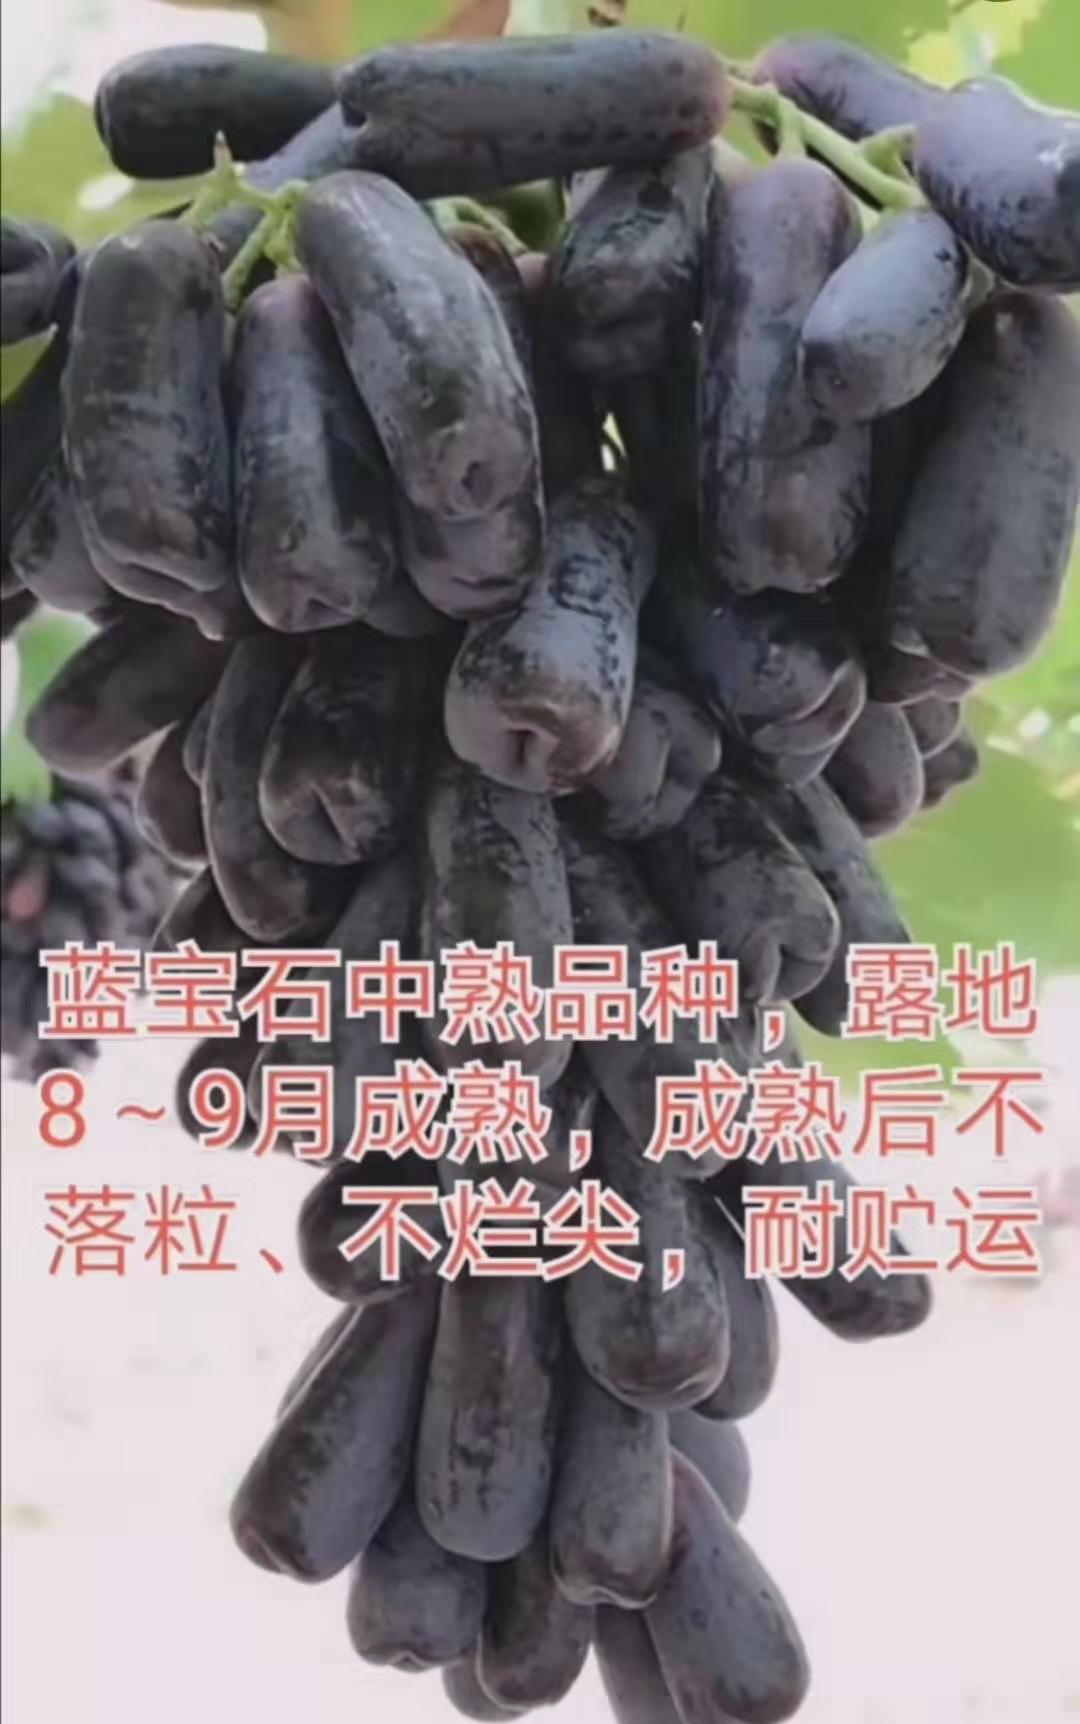 甜蜜蓝宝石葡萄苗价格-出售1-2公分优质葡萄苗